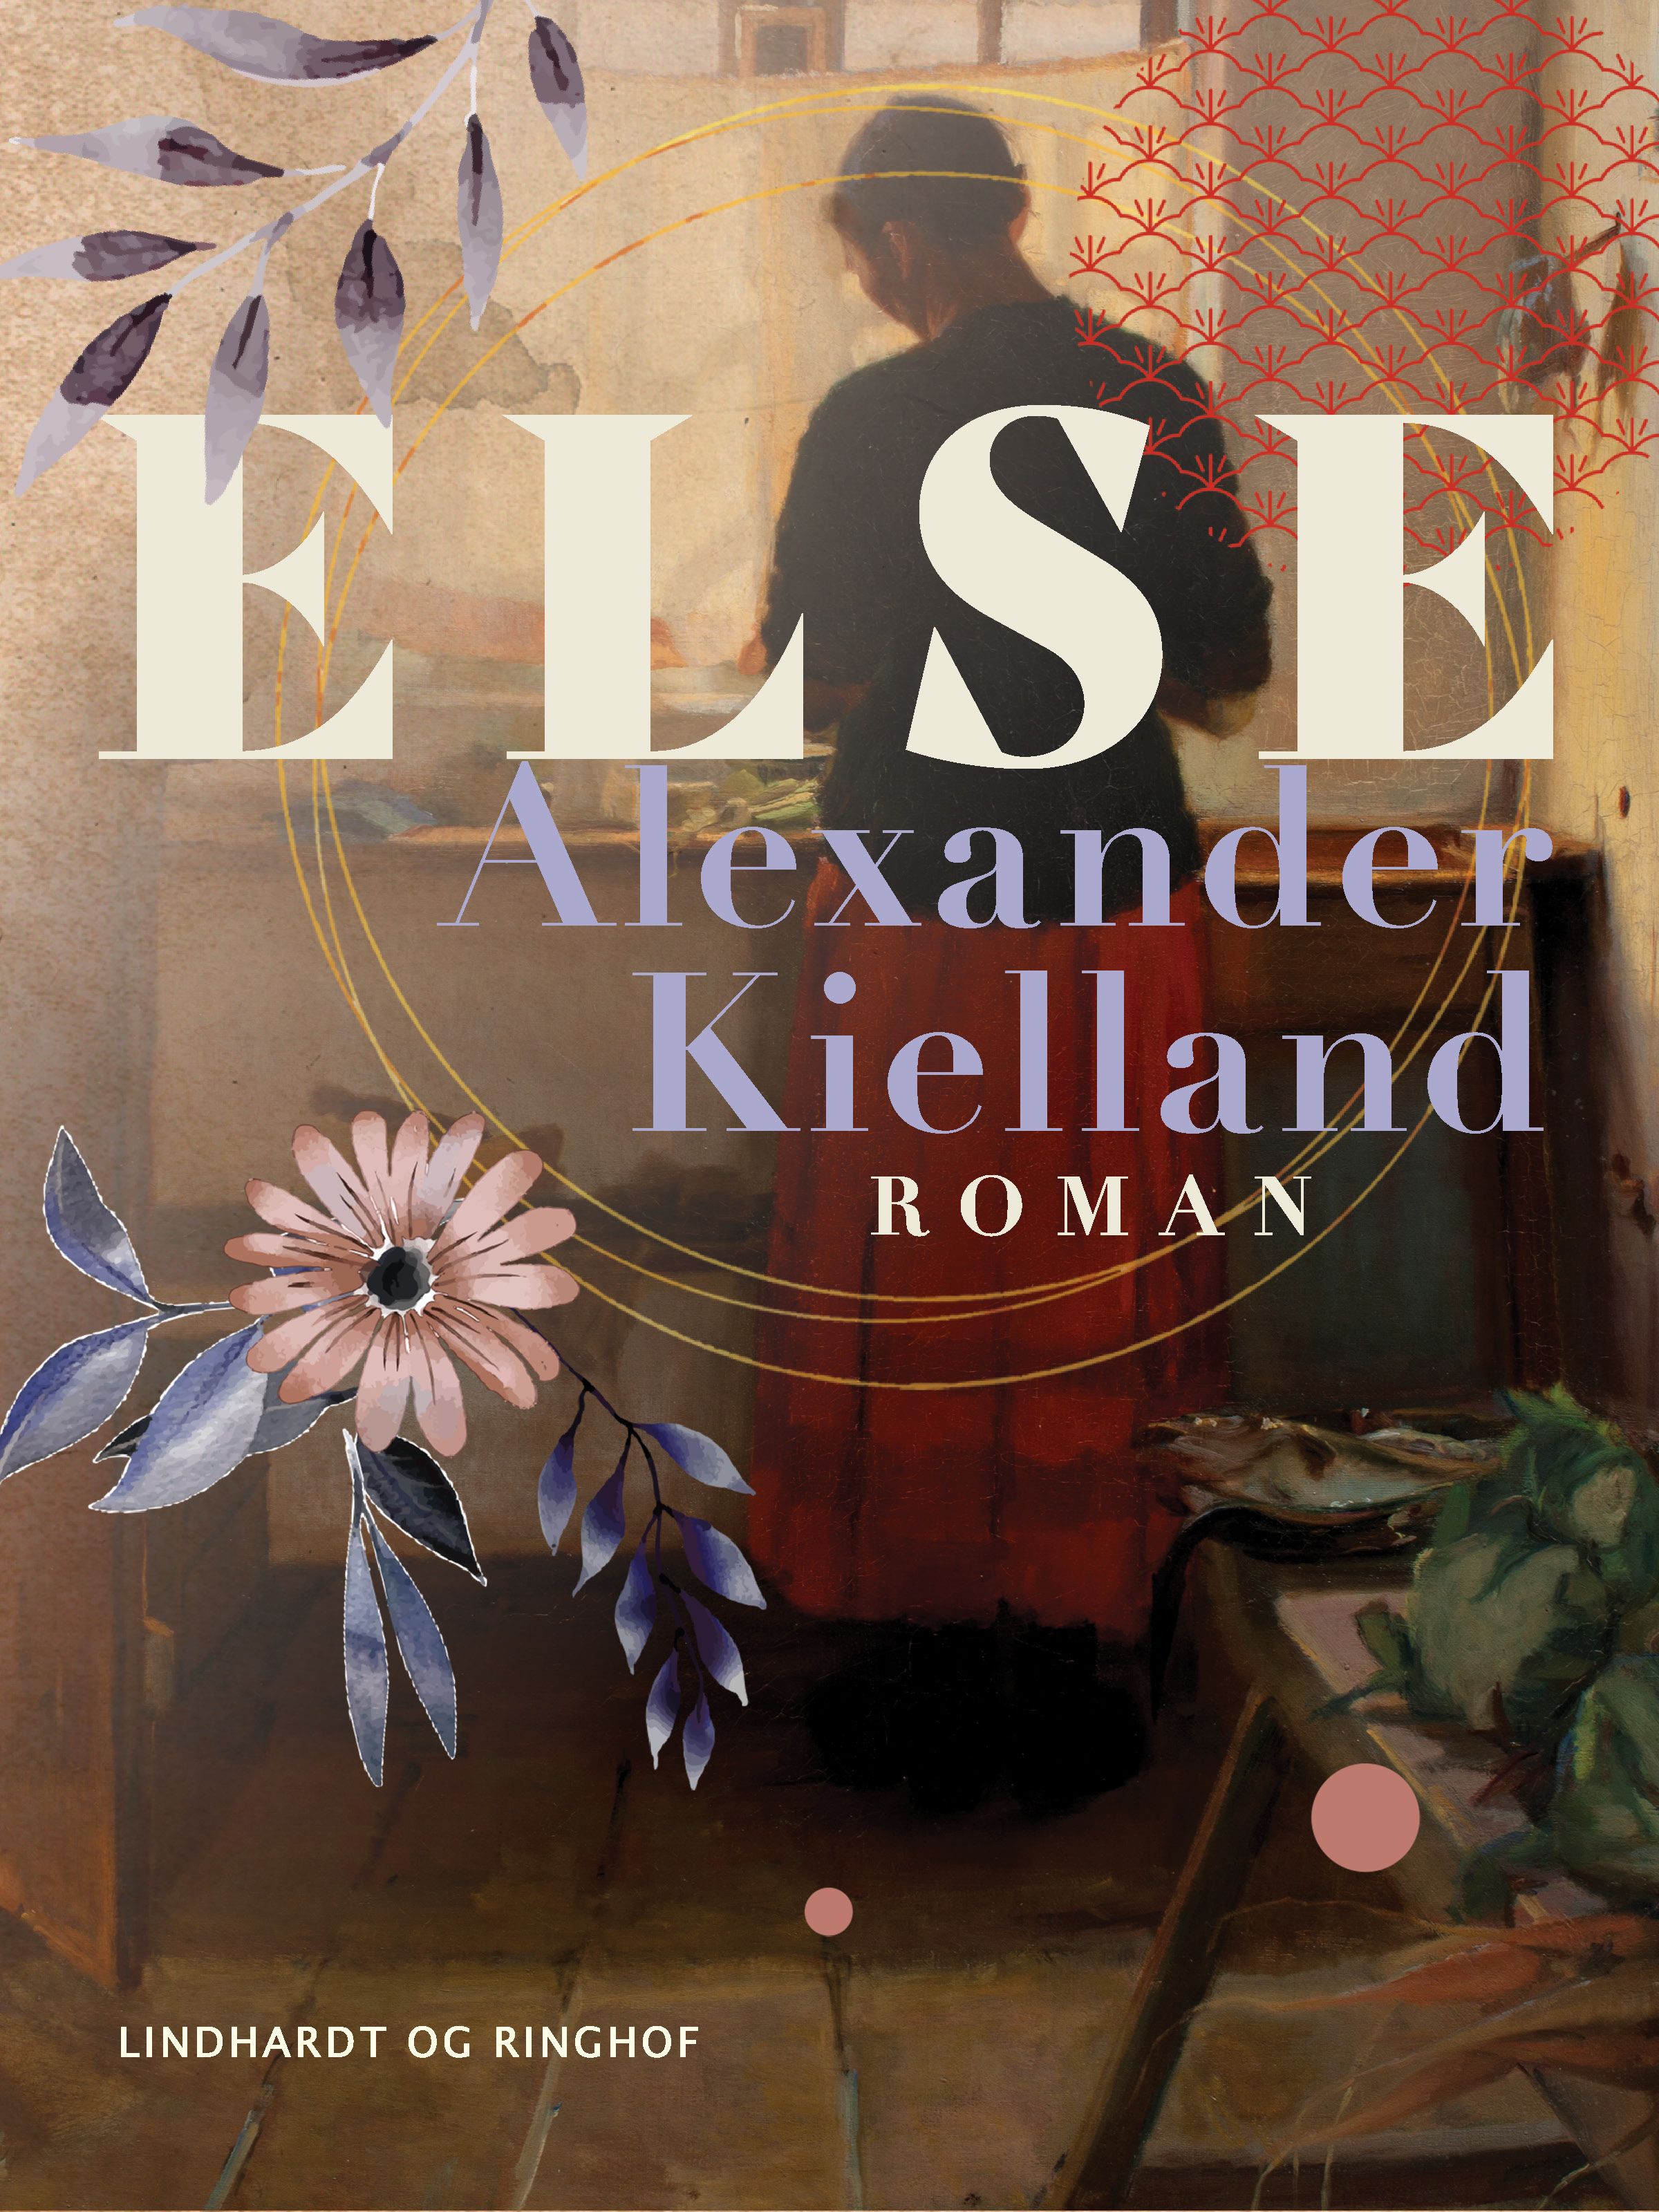 Else, e-bog af Alexander Kielland